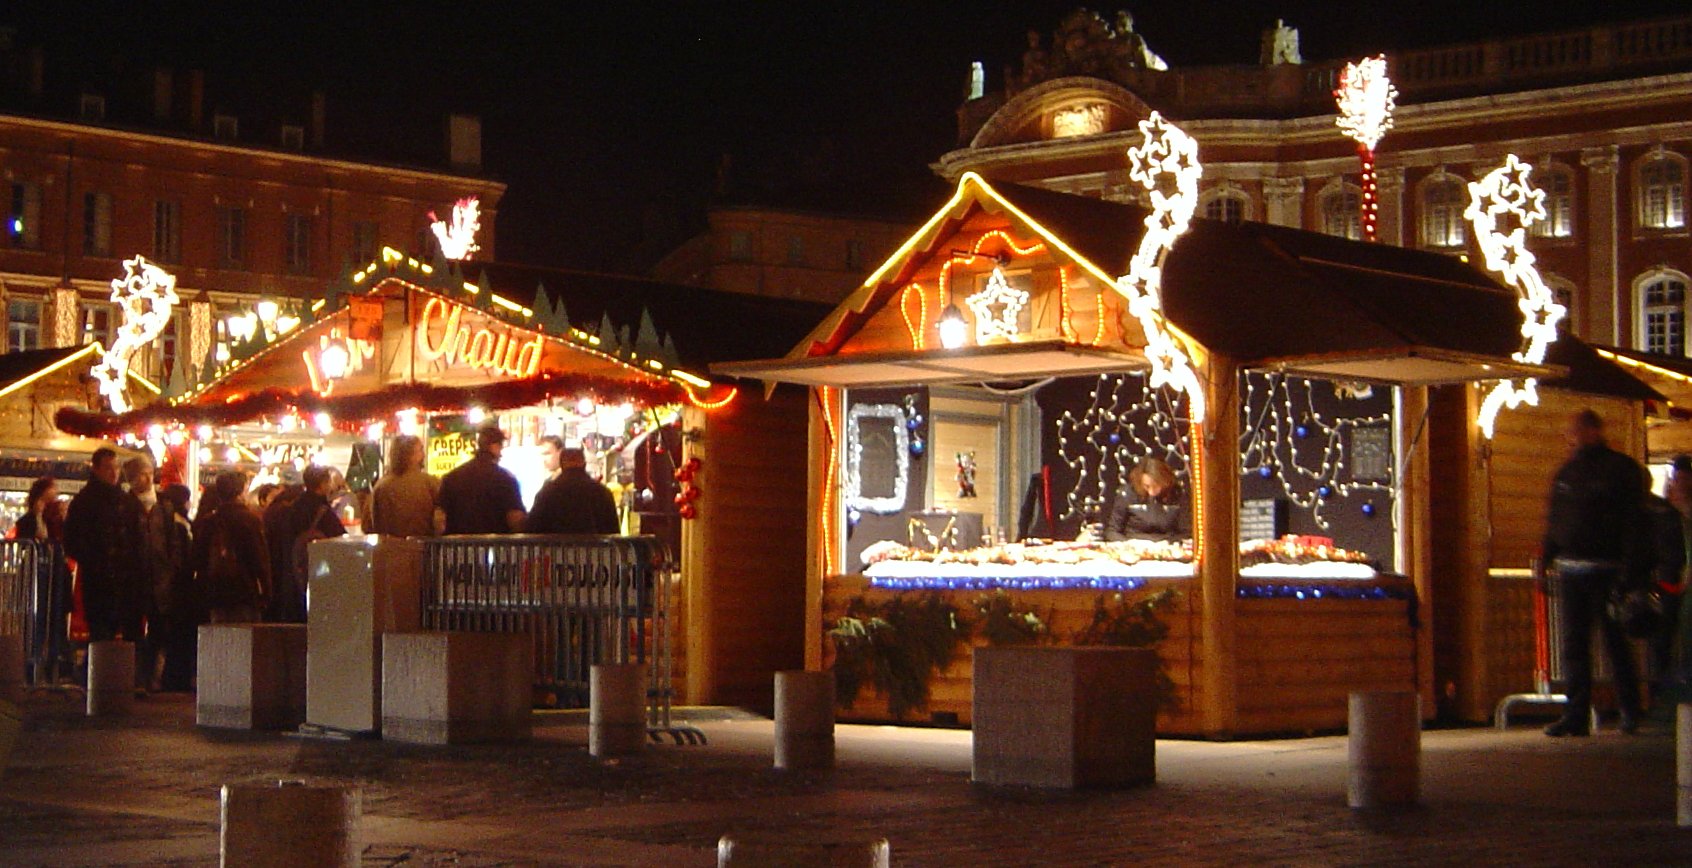 Mercatini di Natale, la Torino che aspetta le feste